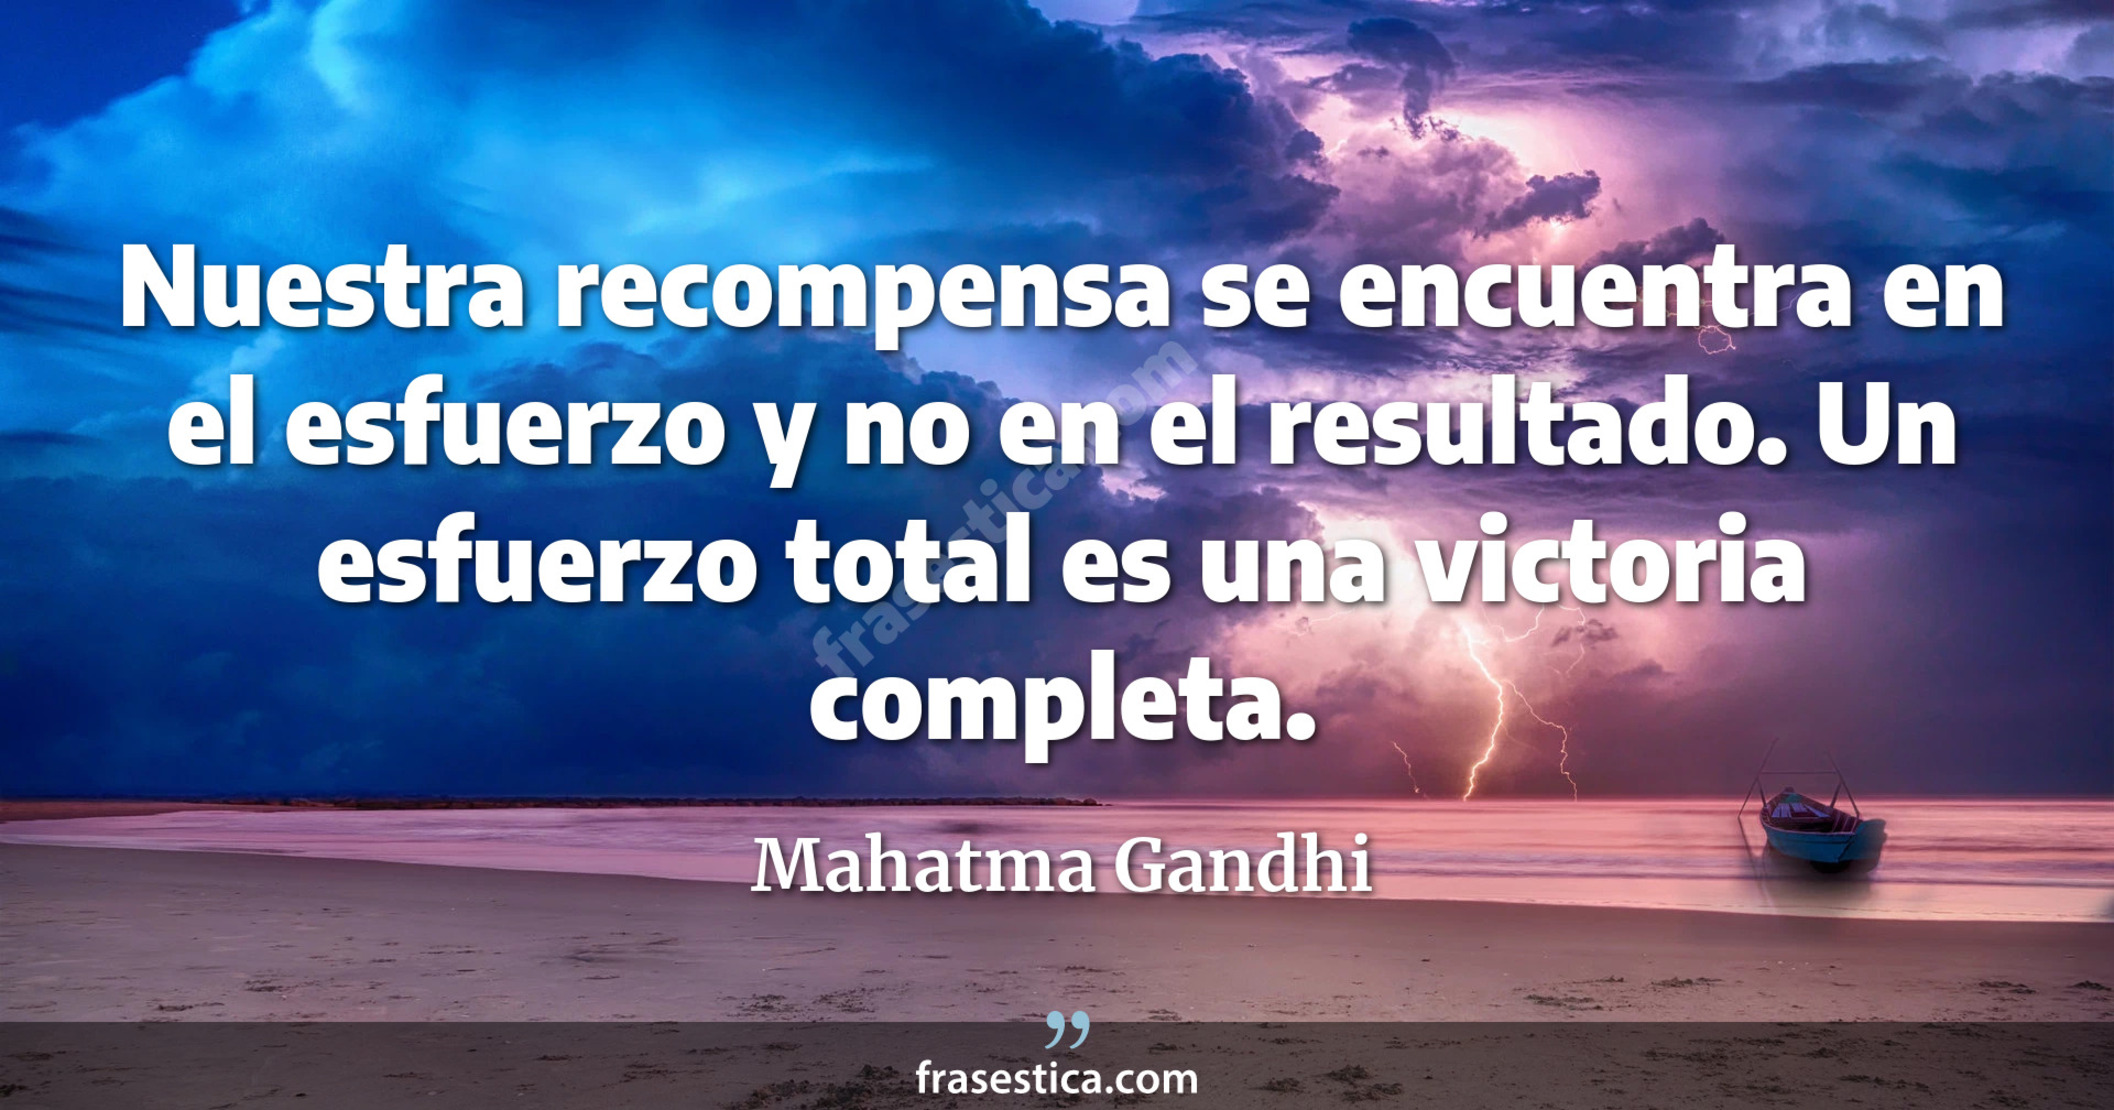 Nuestra recompensa se encuentra en el esfuerzo y no en el resultado. Un esfuerzo total es una victoria completa. - Mahatma Gandhi